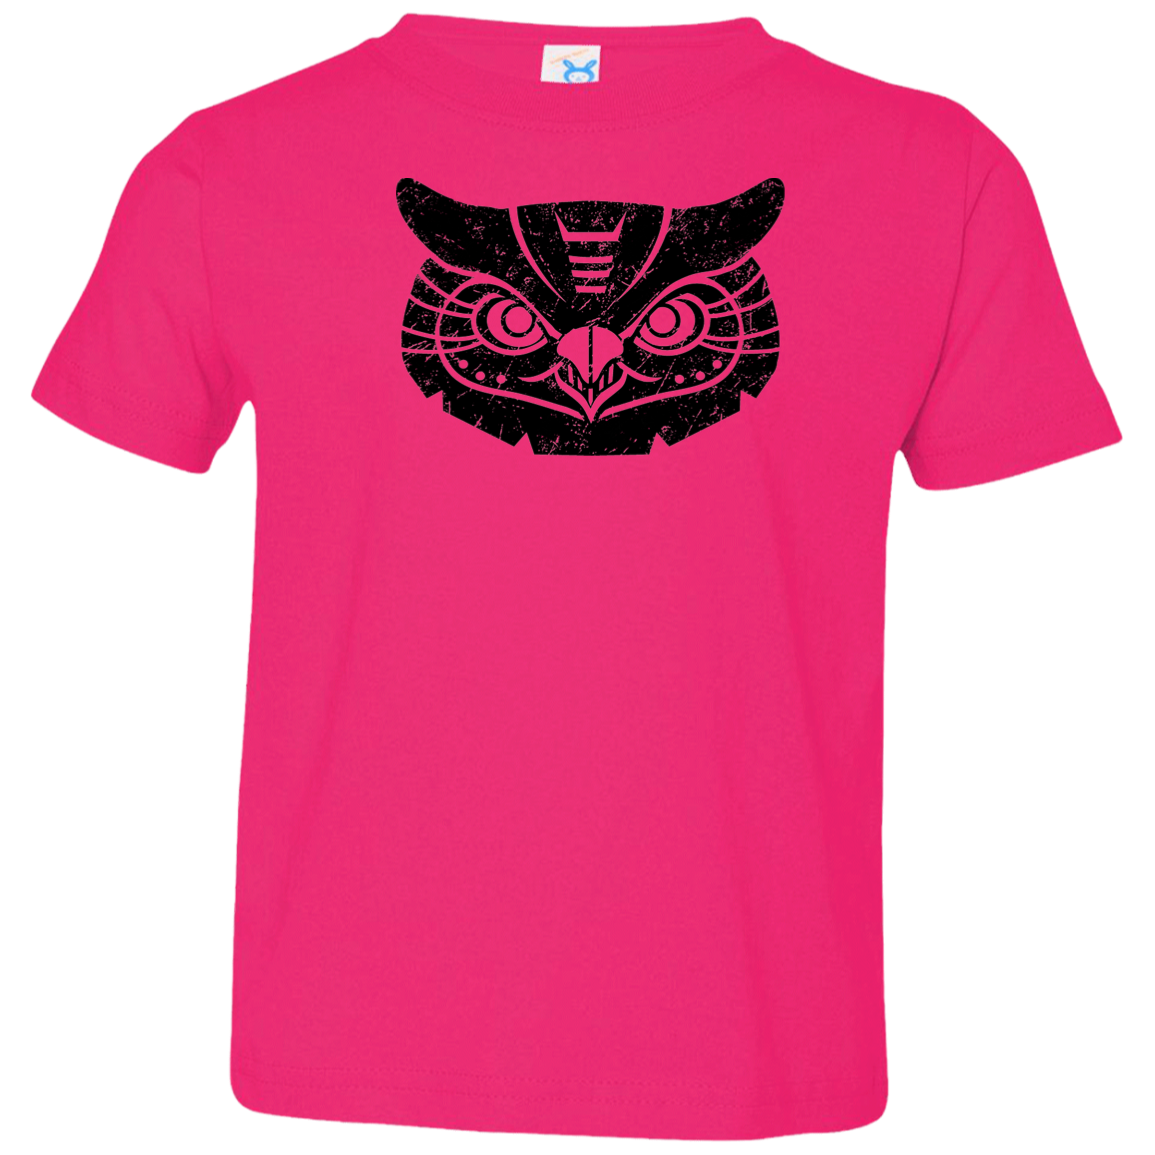 Black Distressed Emblem T-Shirt for Toddlers (Great Horned Owl/Luna)